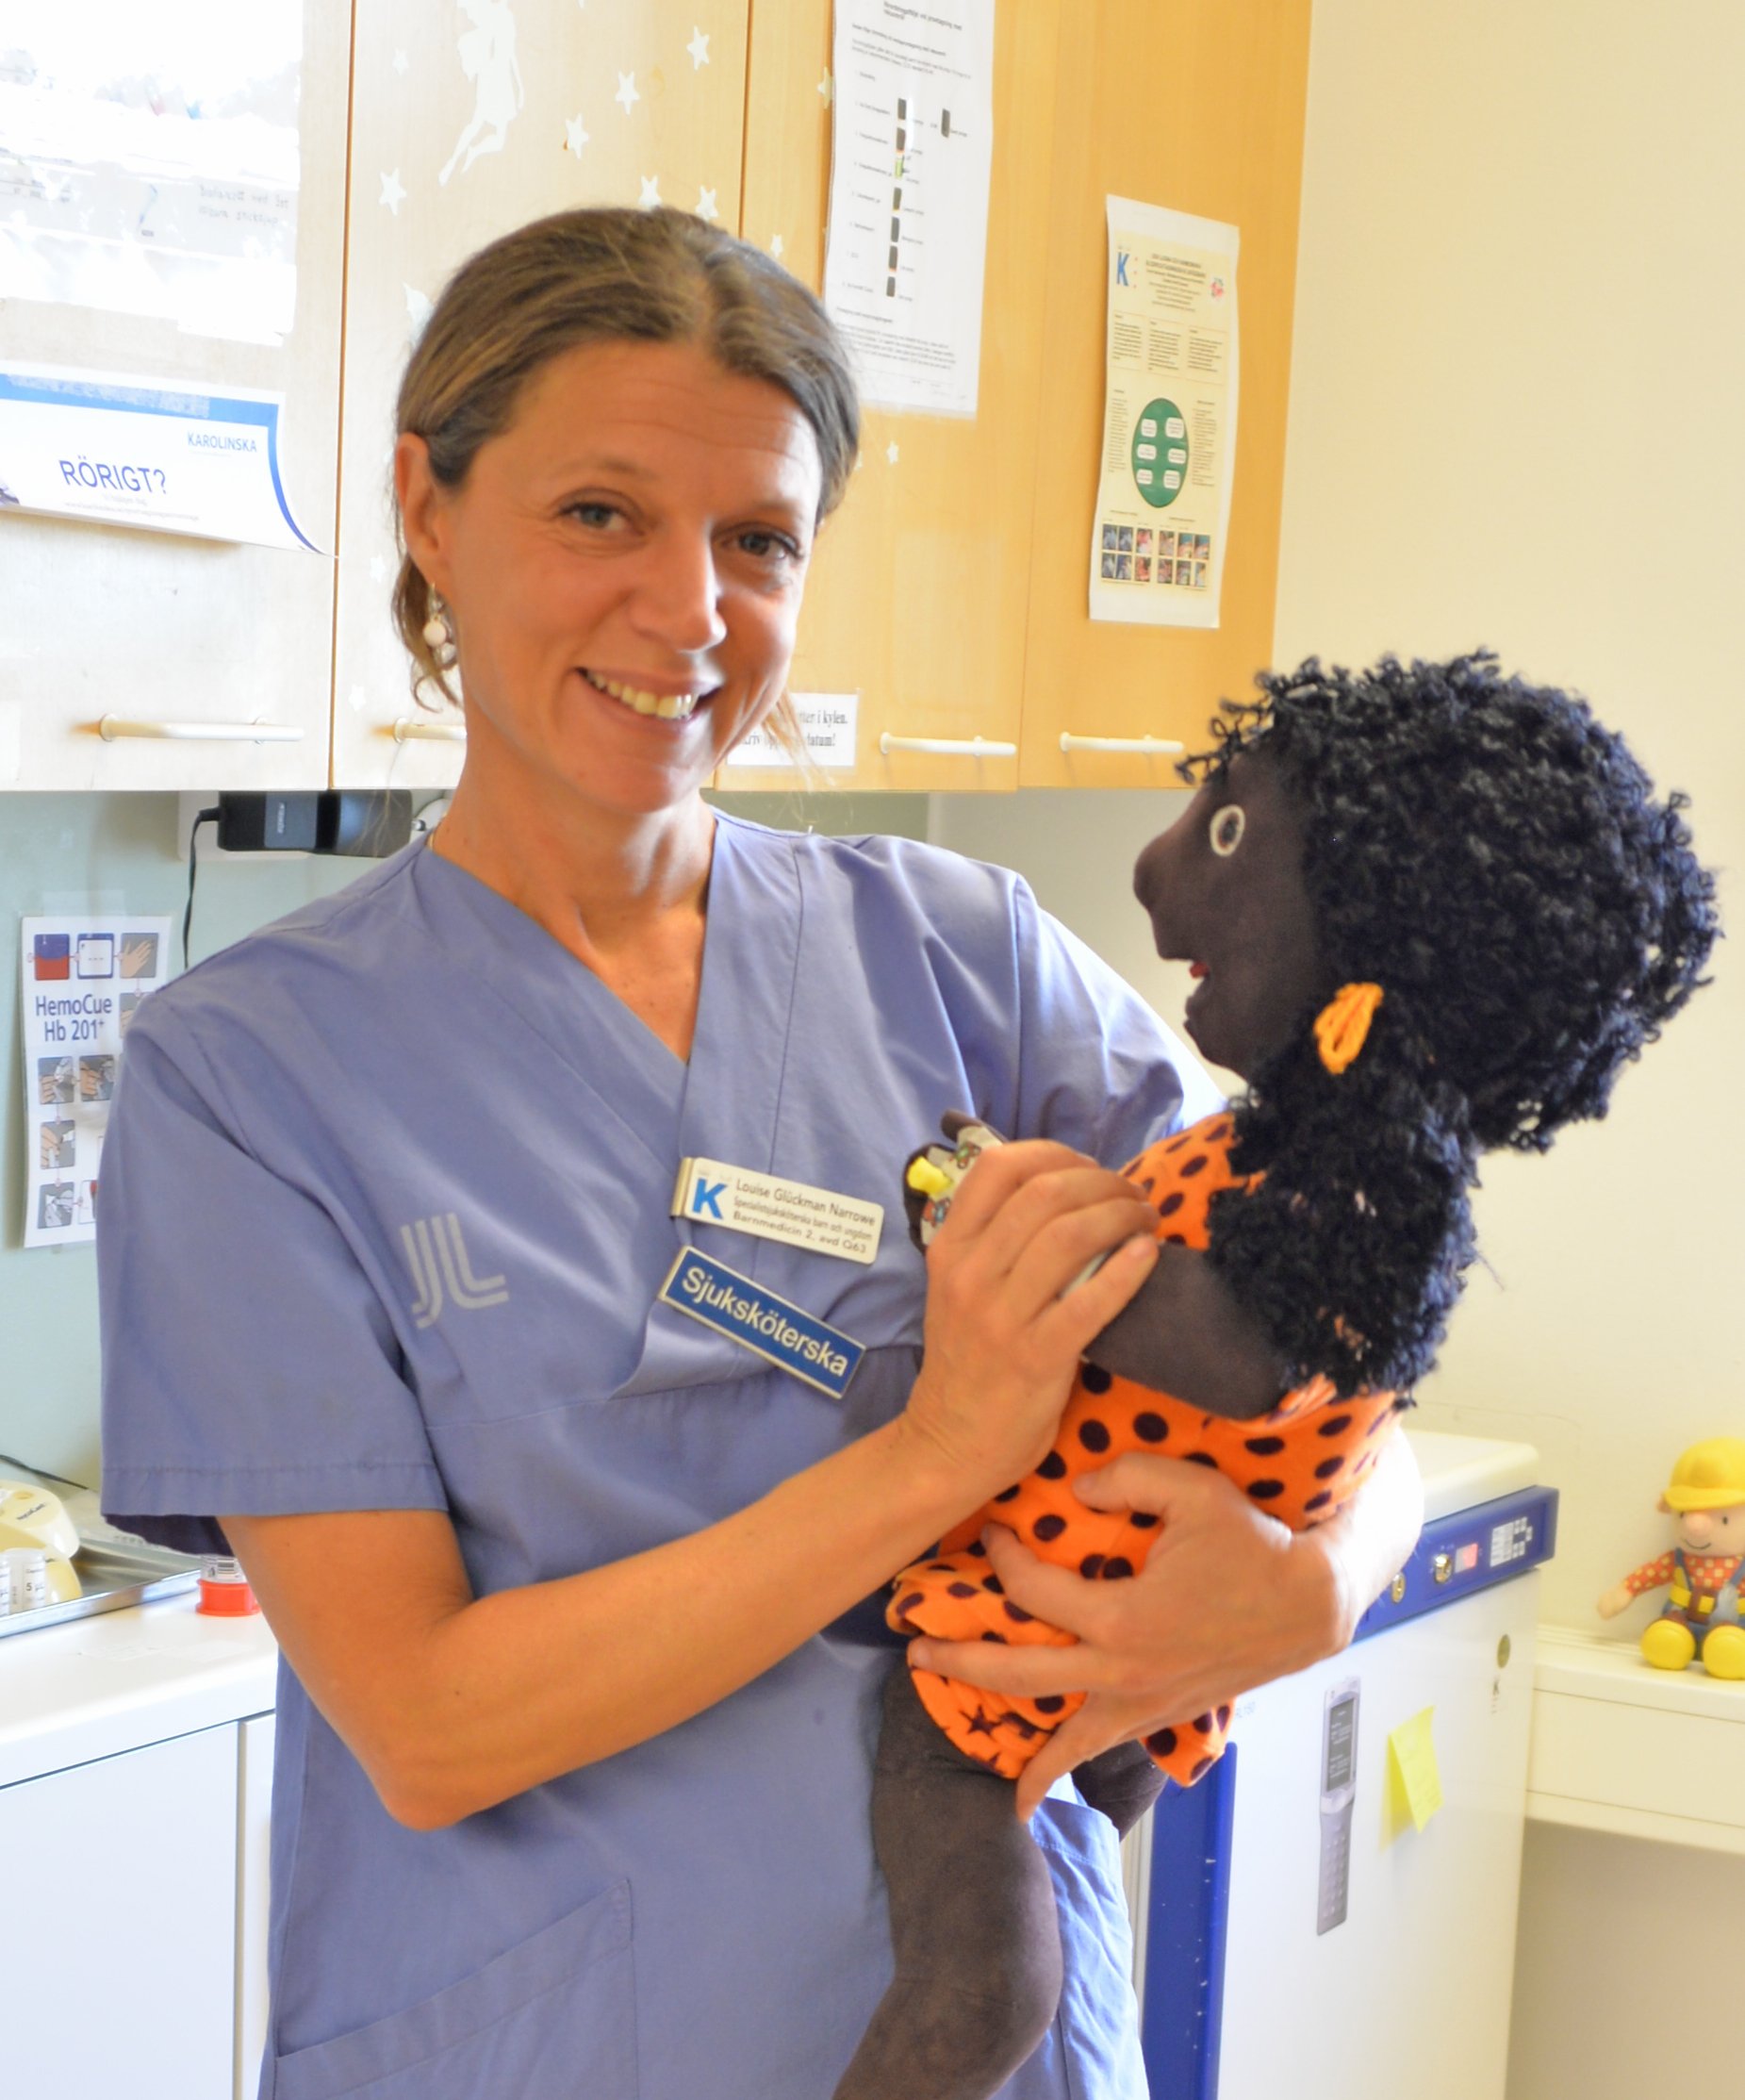 Barnsjuksköterska håller i docka som kan användas för att visa hur en behandling går till.